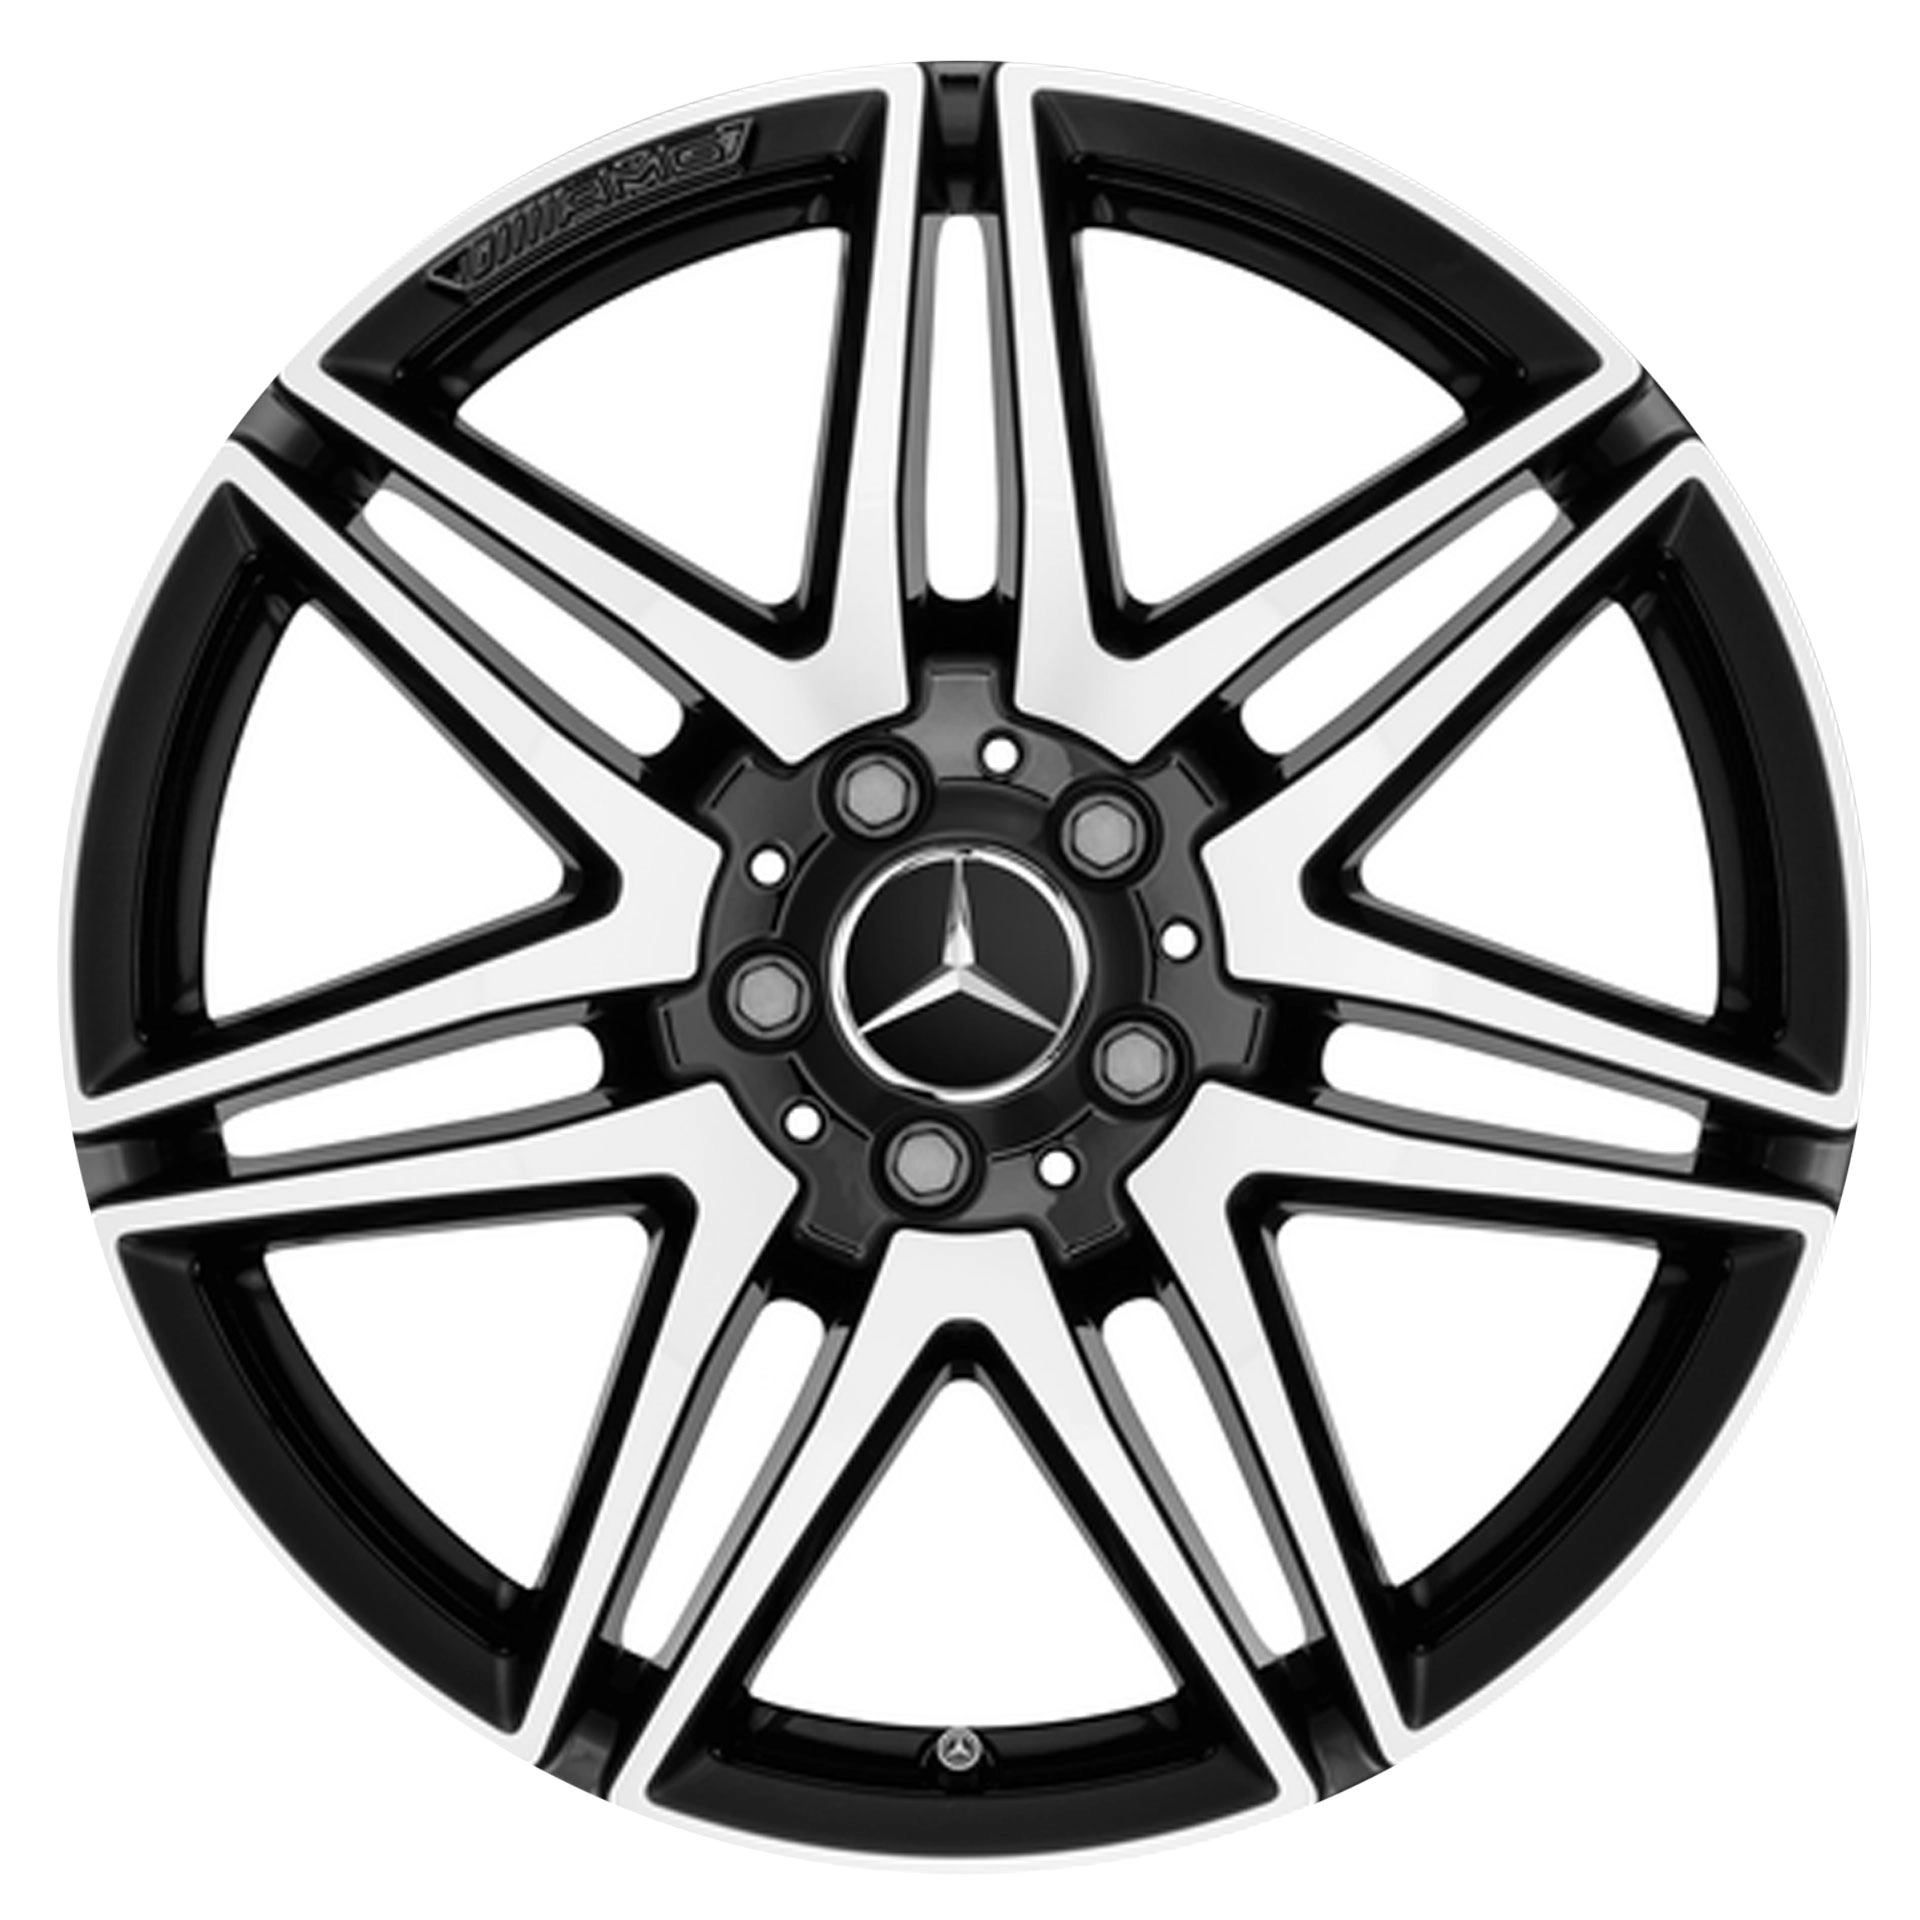 Mercedes-AMG 7-Doppelspeichen-Rad 19 Zoll Leichtmetallfelge glanzgedreht A44740151007X23